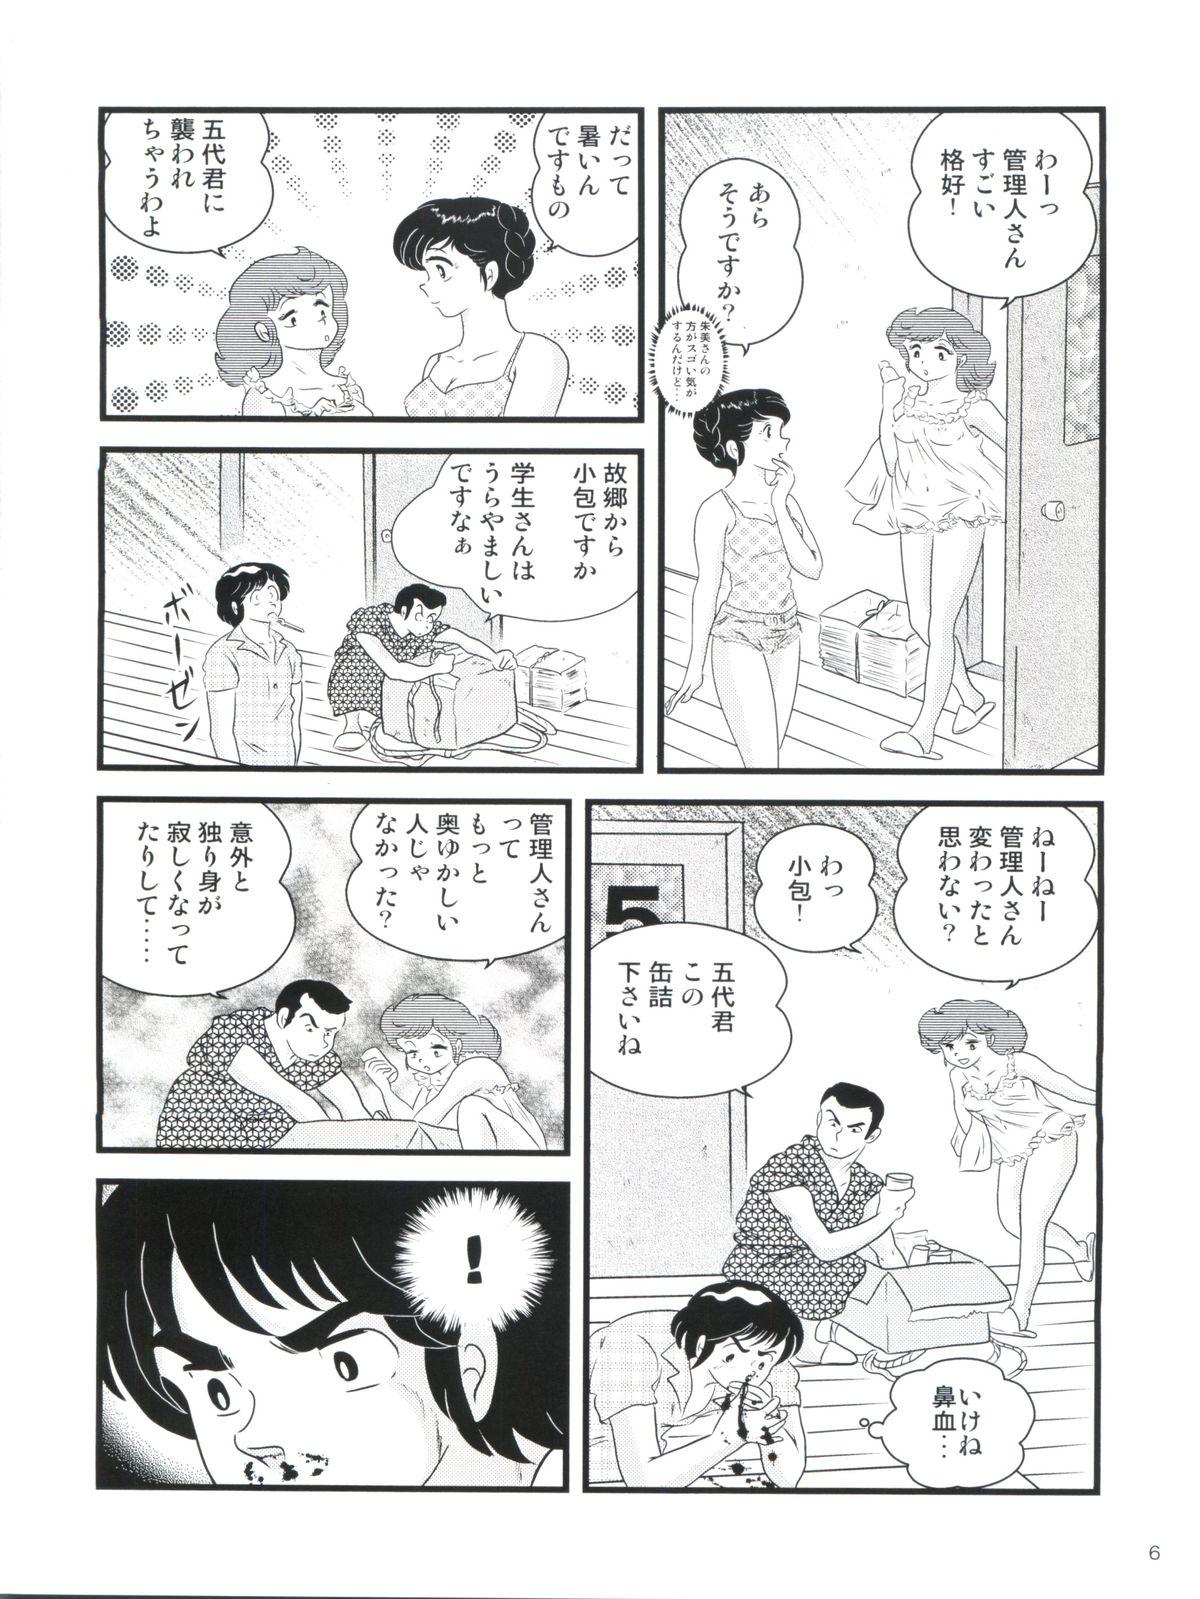 Bubble Butt Fairy 14 - Maison ikkoku Punk - Page 10